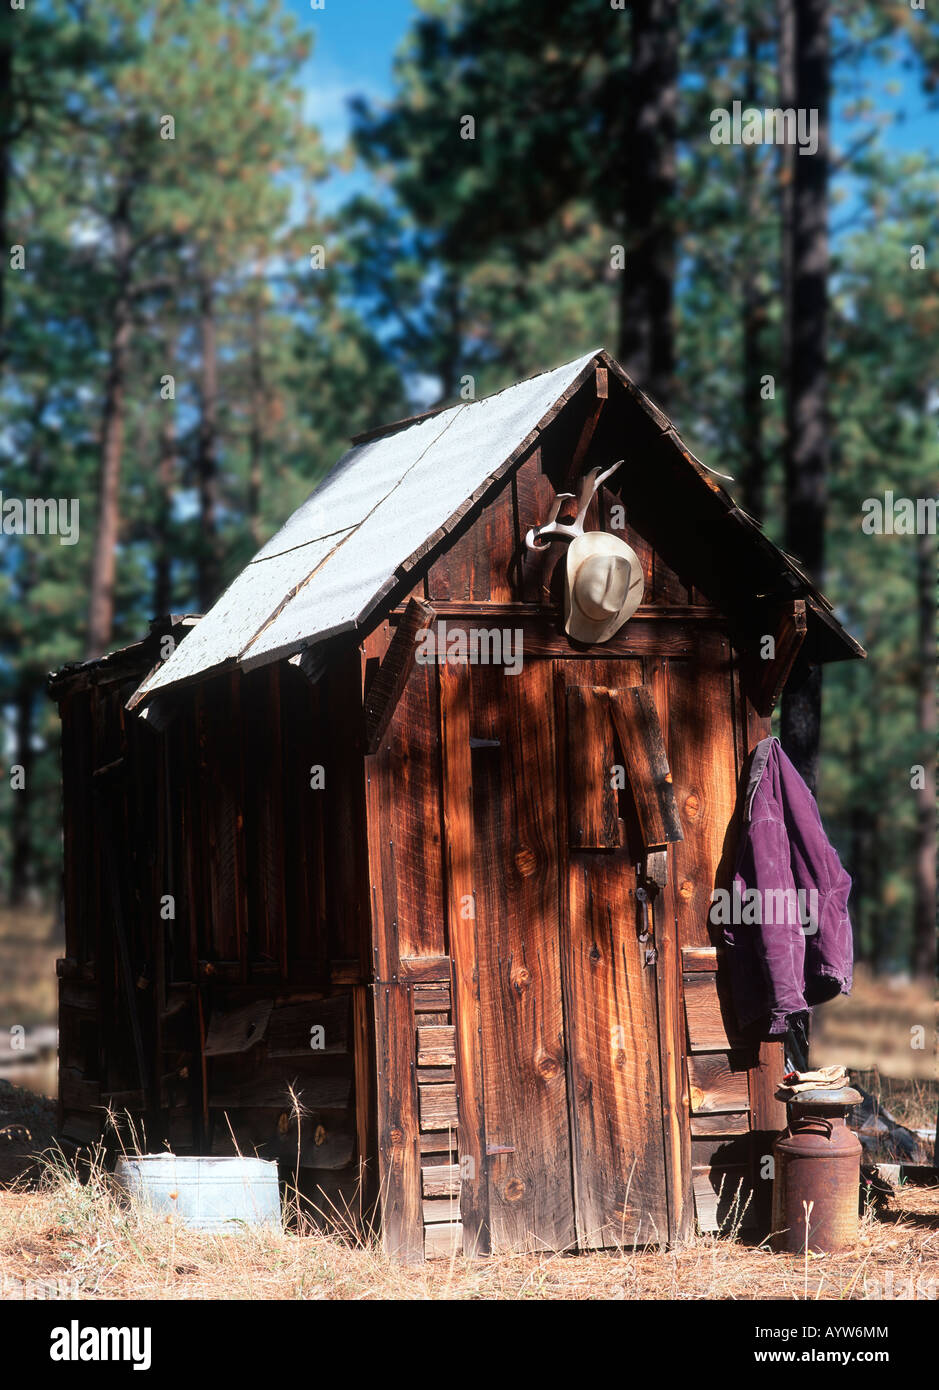 Il cappello da cowboy è appeso sopra una dipendenza rurale (water closet) indicano la toilette è in uso. Foto Stock